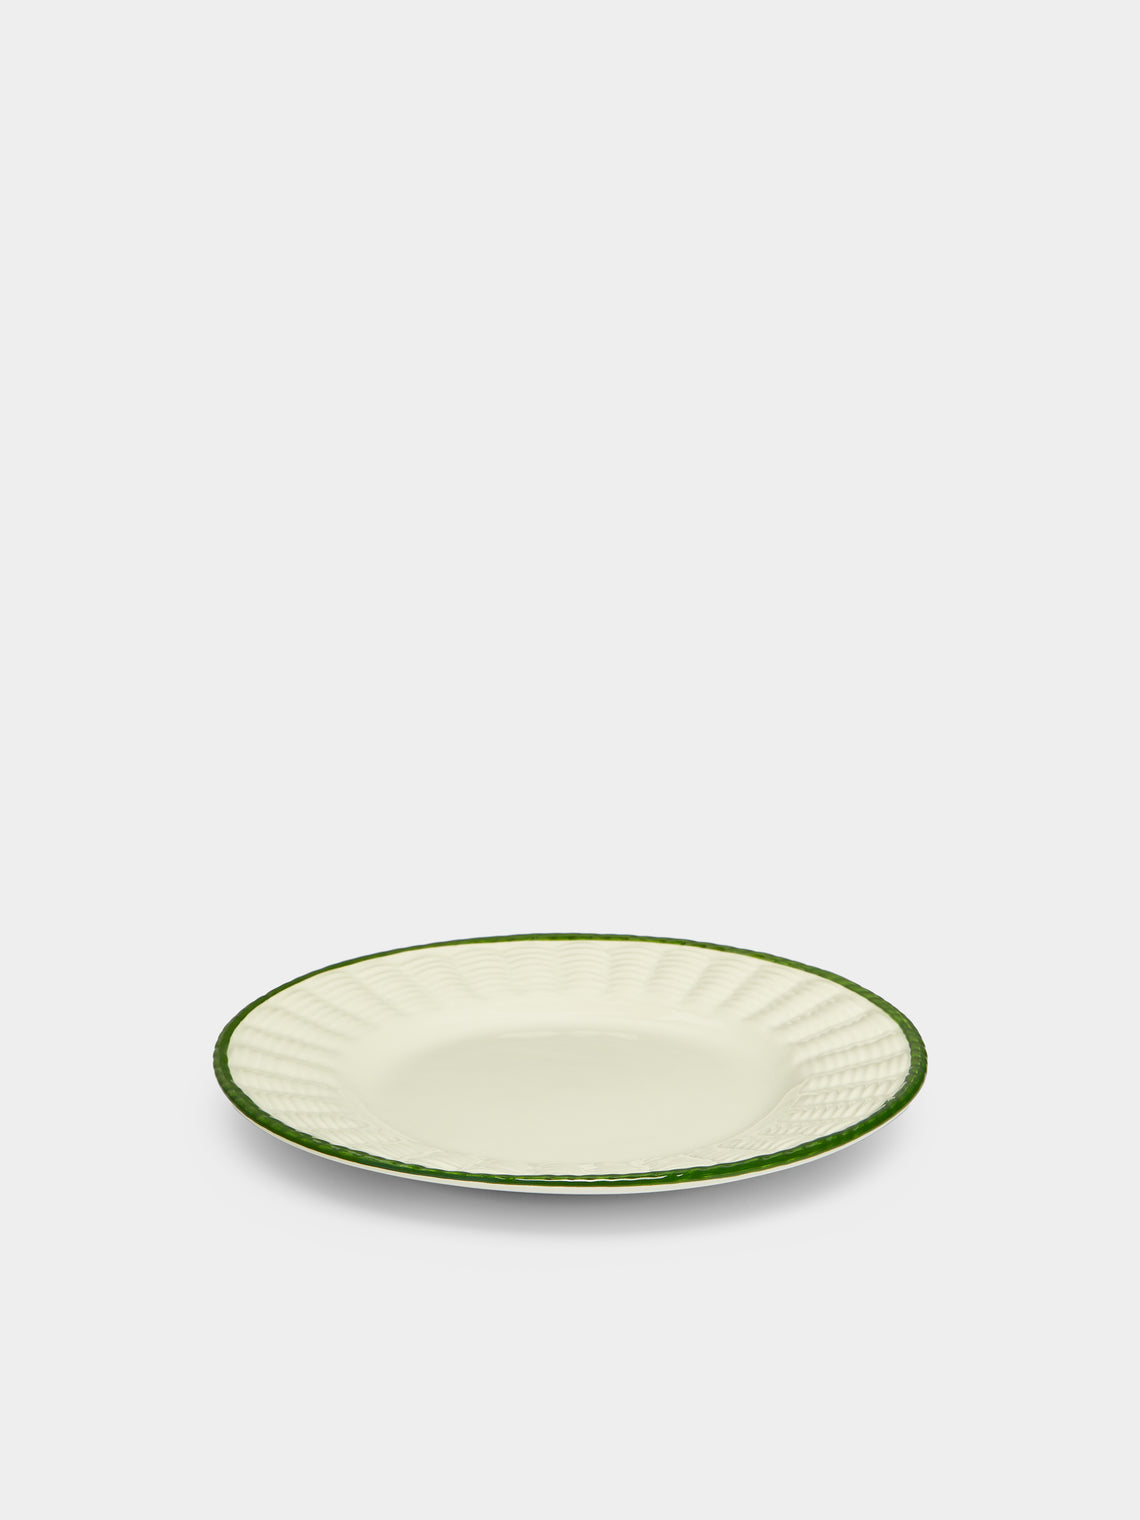 Este Ceramiche - Wicker Hand-Painted Ceramic Dessert Plates (Set of 4) -  - ABASK